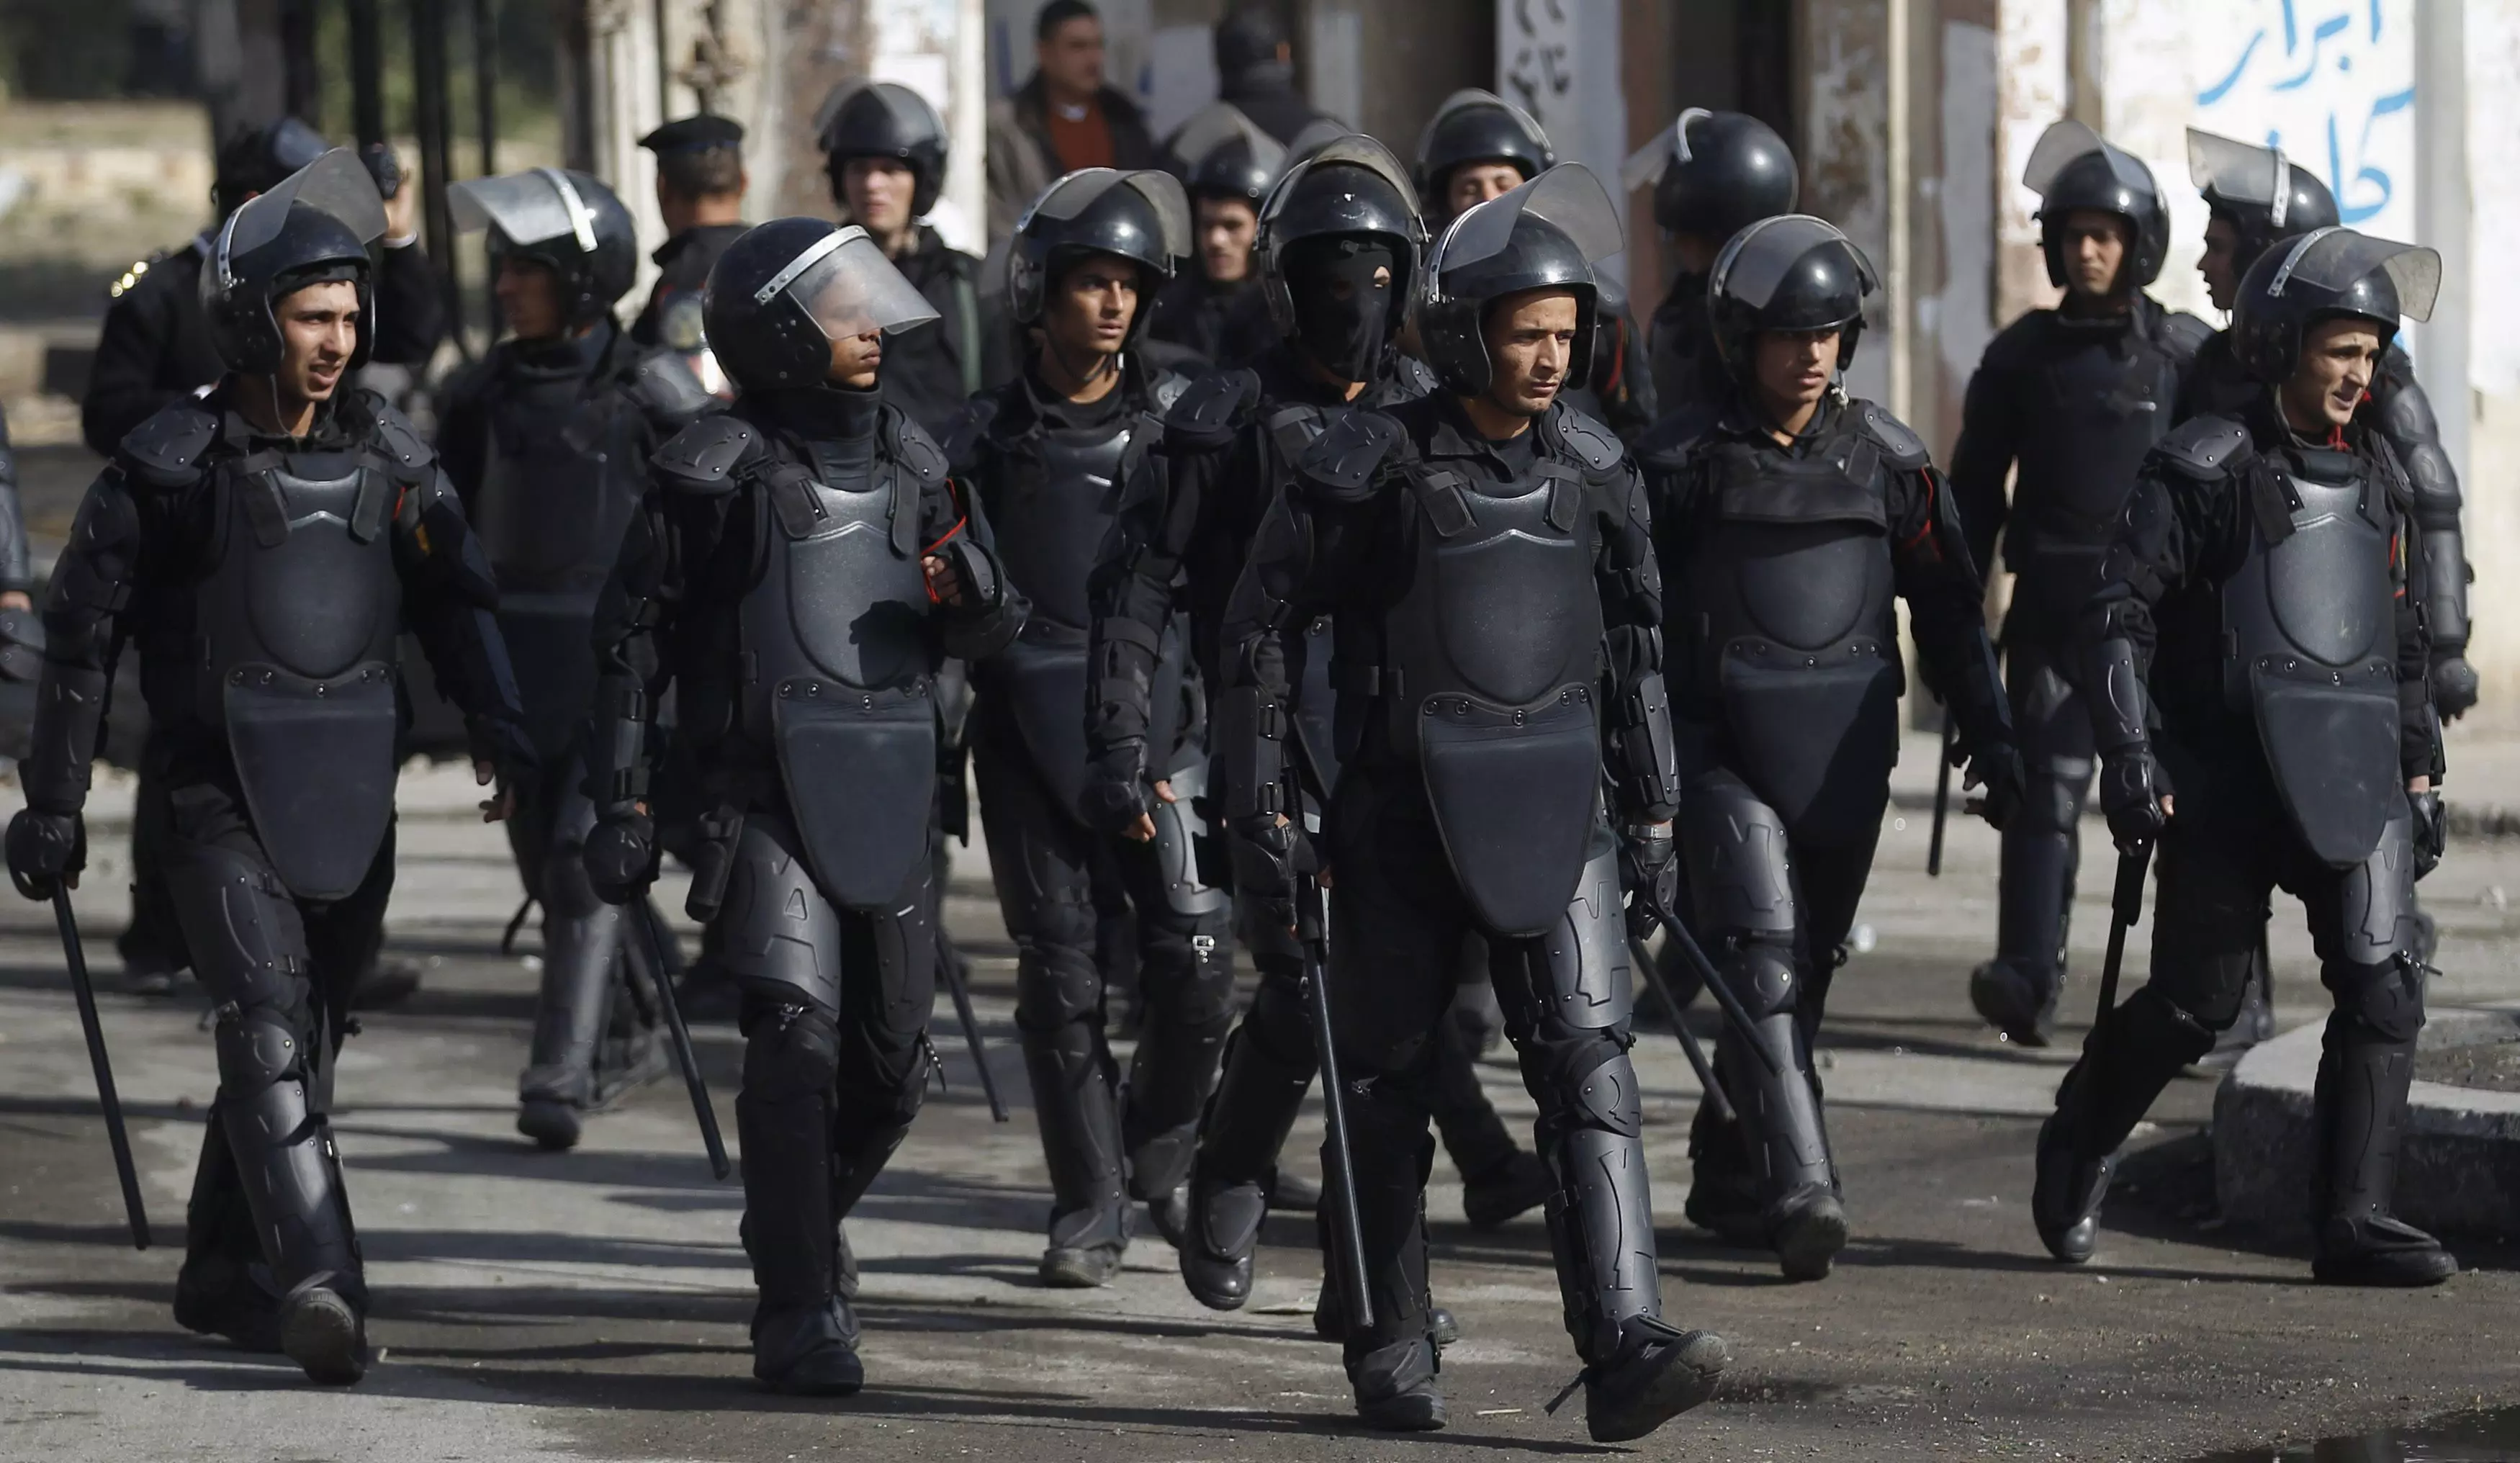 האווירה ברחובות מזכירה הכנות למלחמה. שוטרים בהפגנת תמיכה במורסי